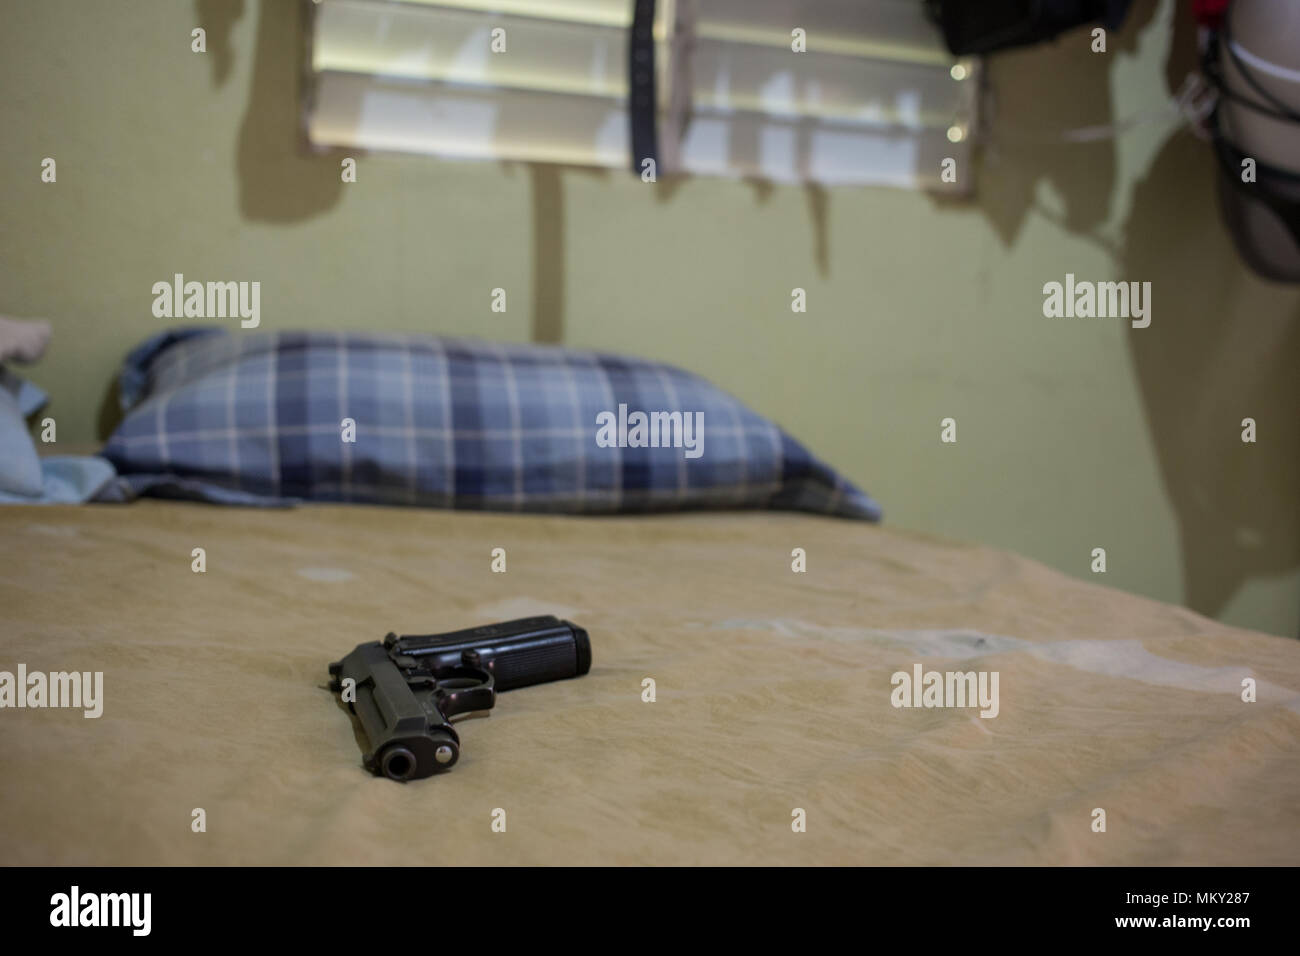 Gun on bed Stock Photo